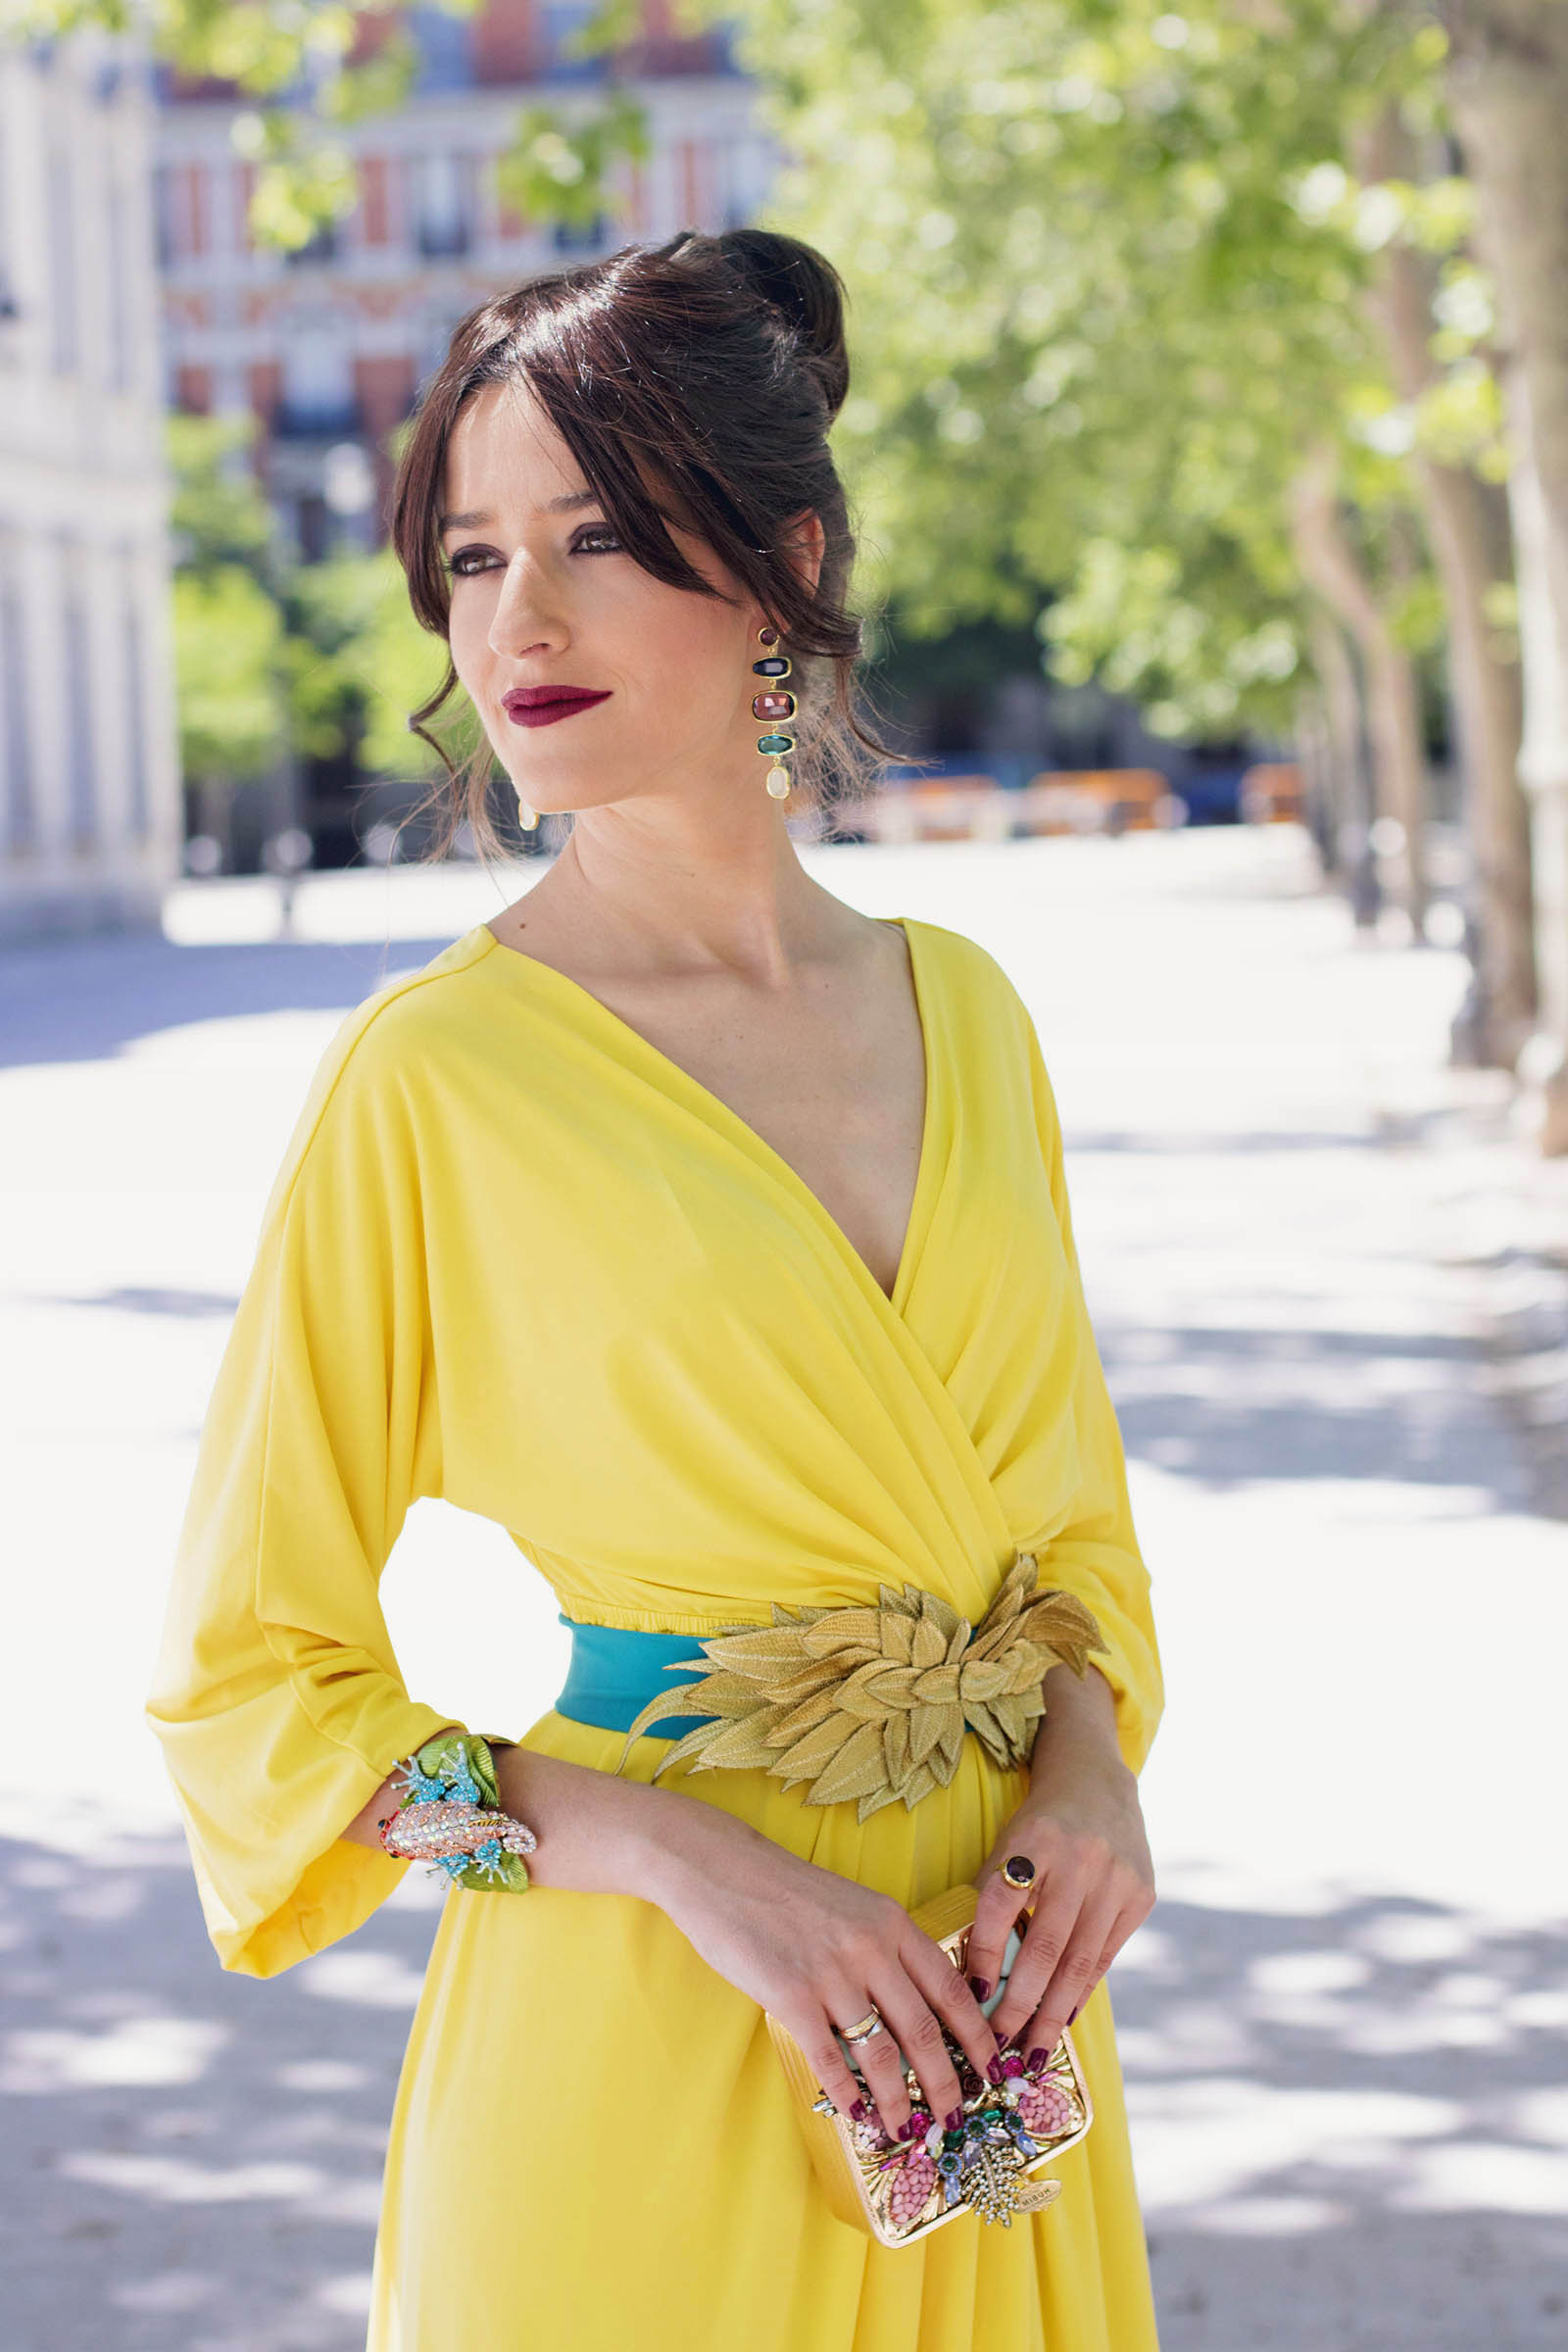 Look invitada noche: el vestido kimono amarillo | Invitada Perfecta